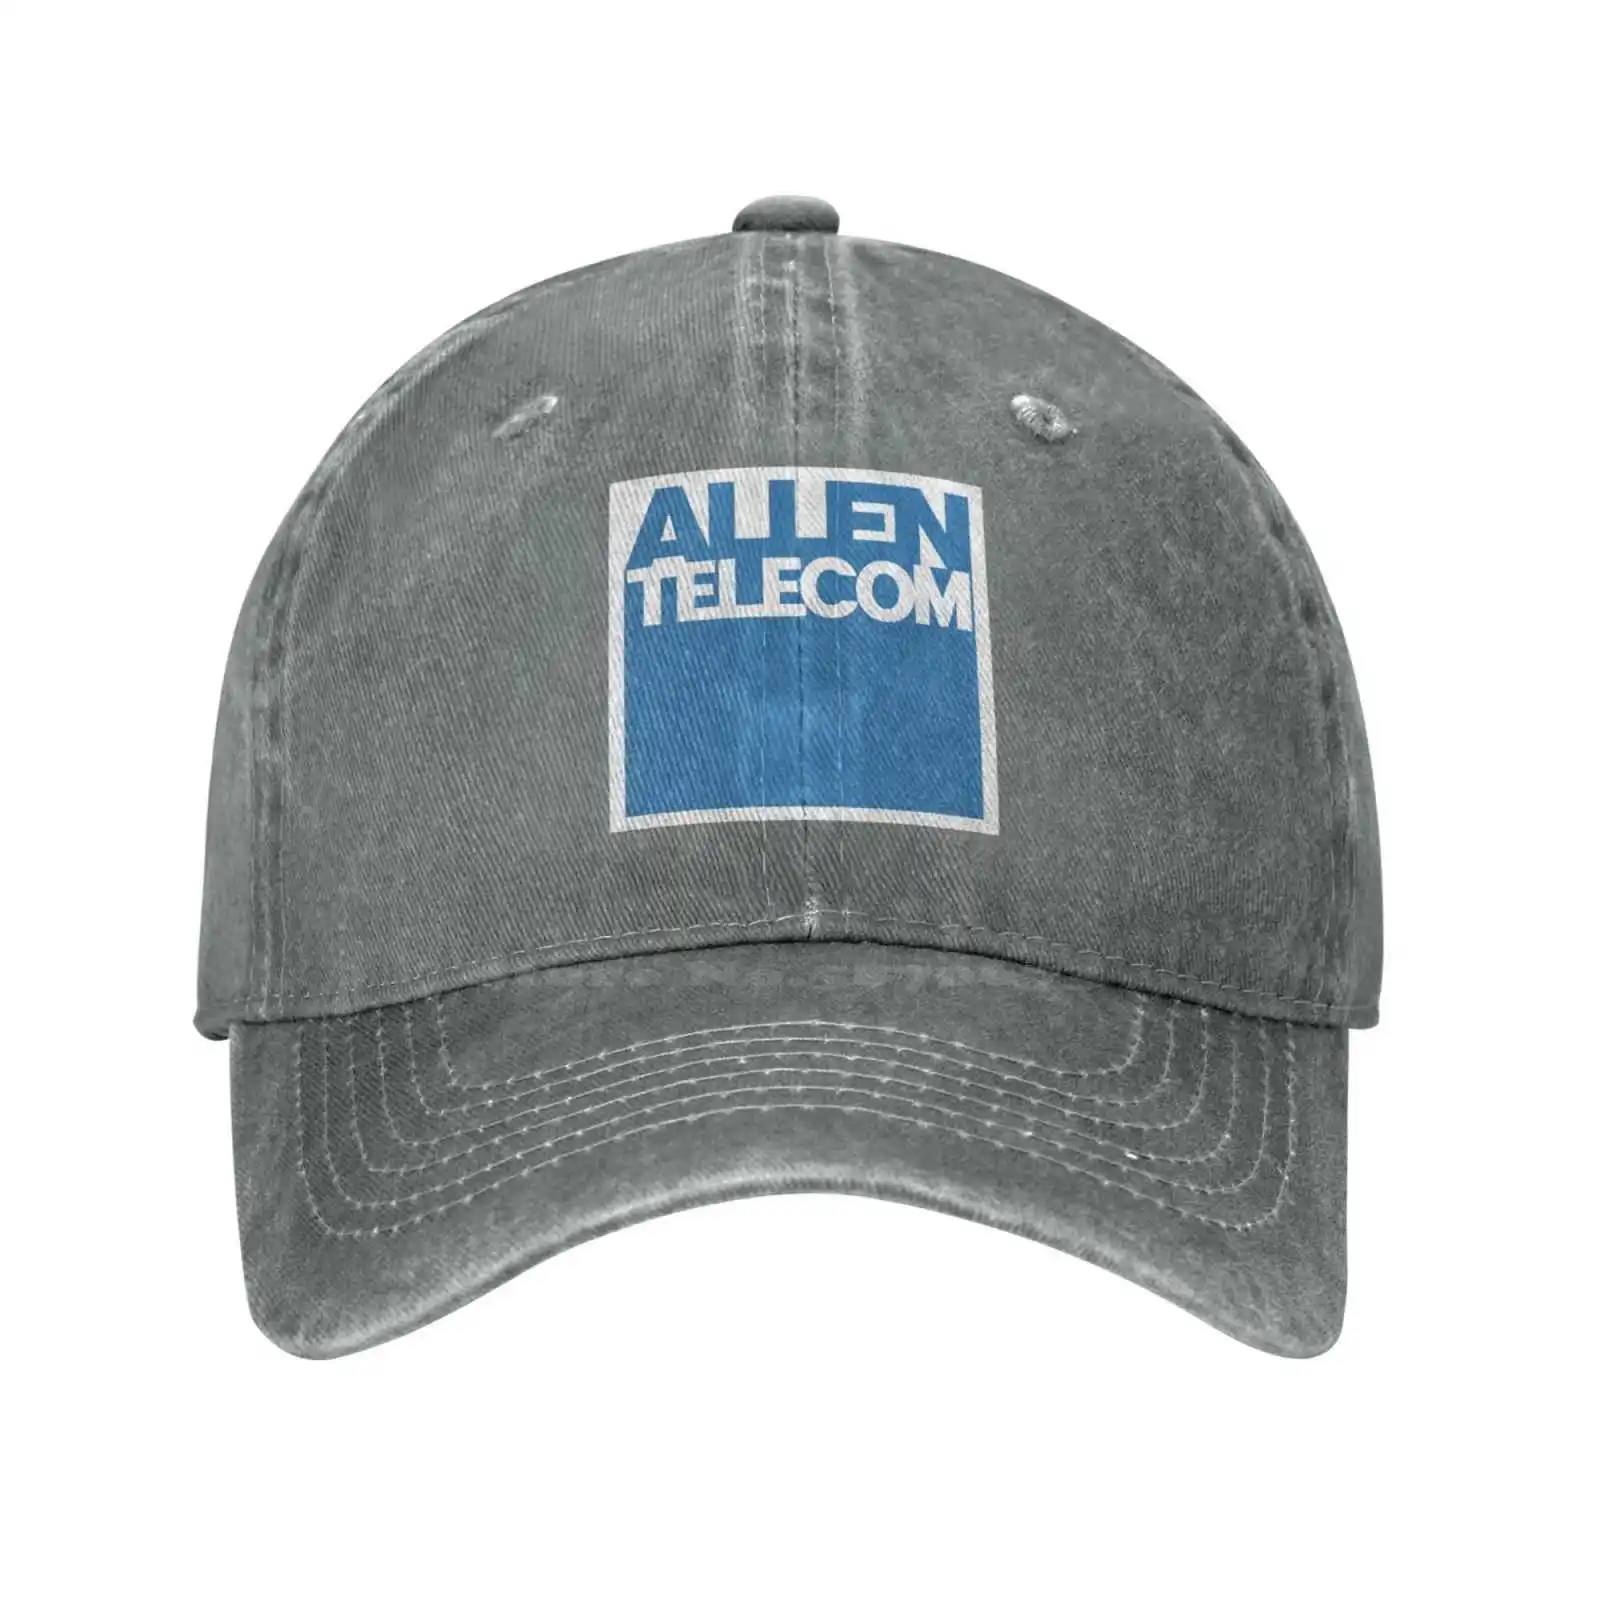 Аллен качественный логотип Телеком моды джинсовая шапка вязаная шляпа бейсболка 4